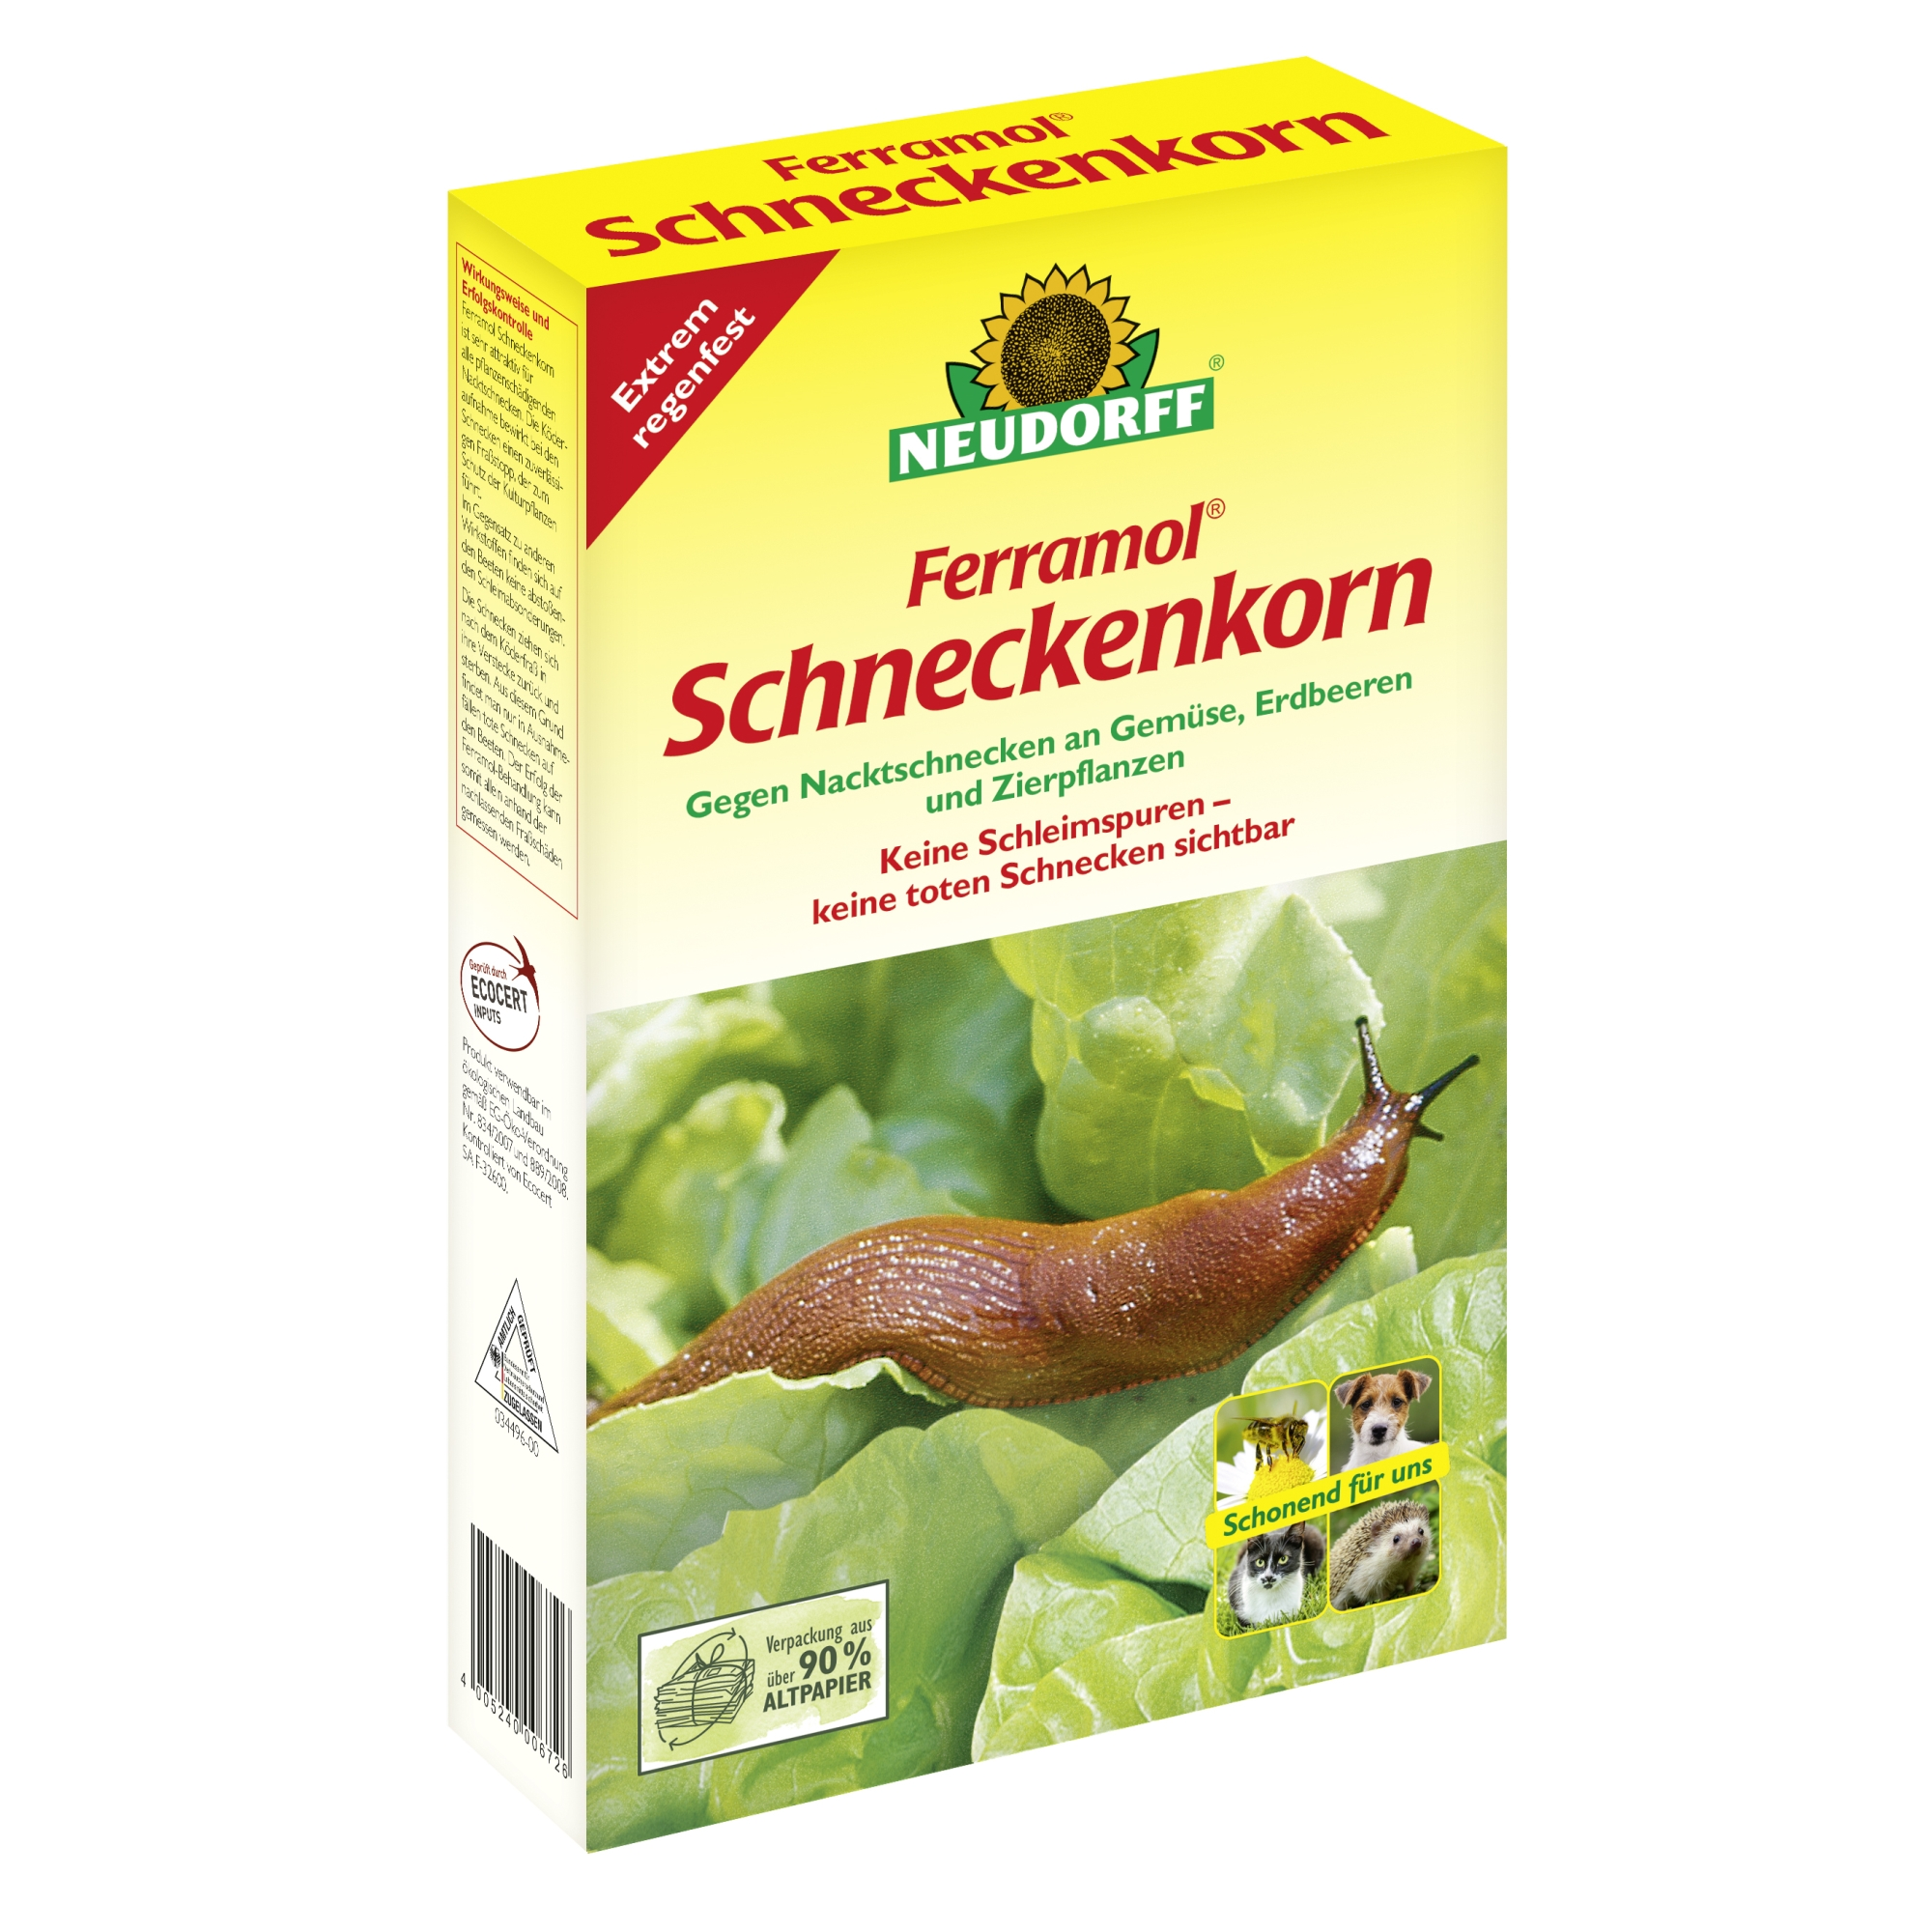 Schneckenkorn 'Ferramol' 1 kg + product picture